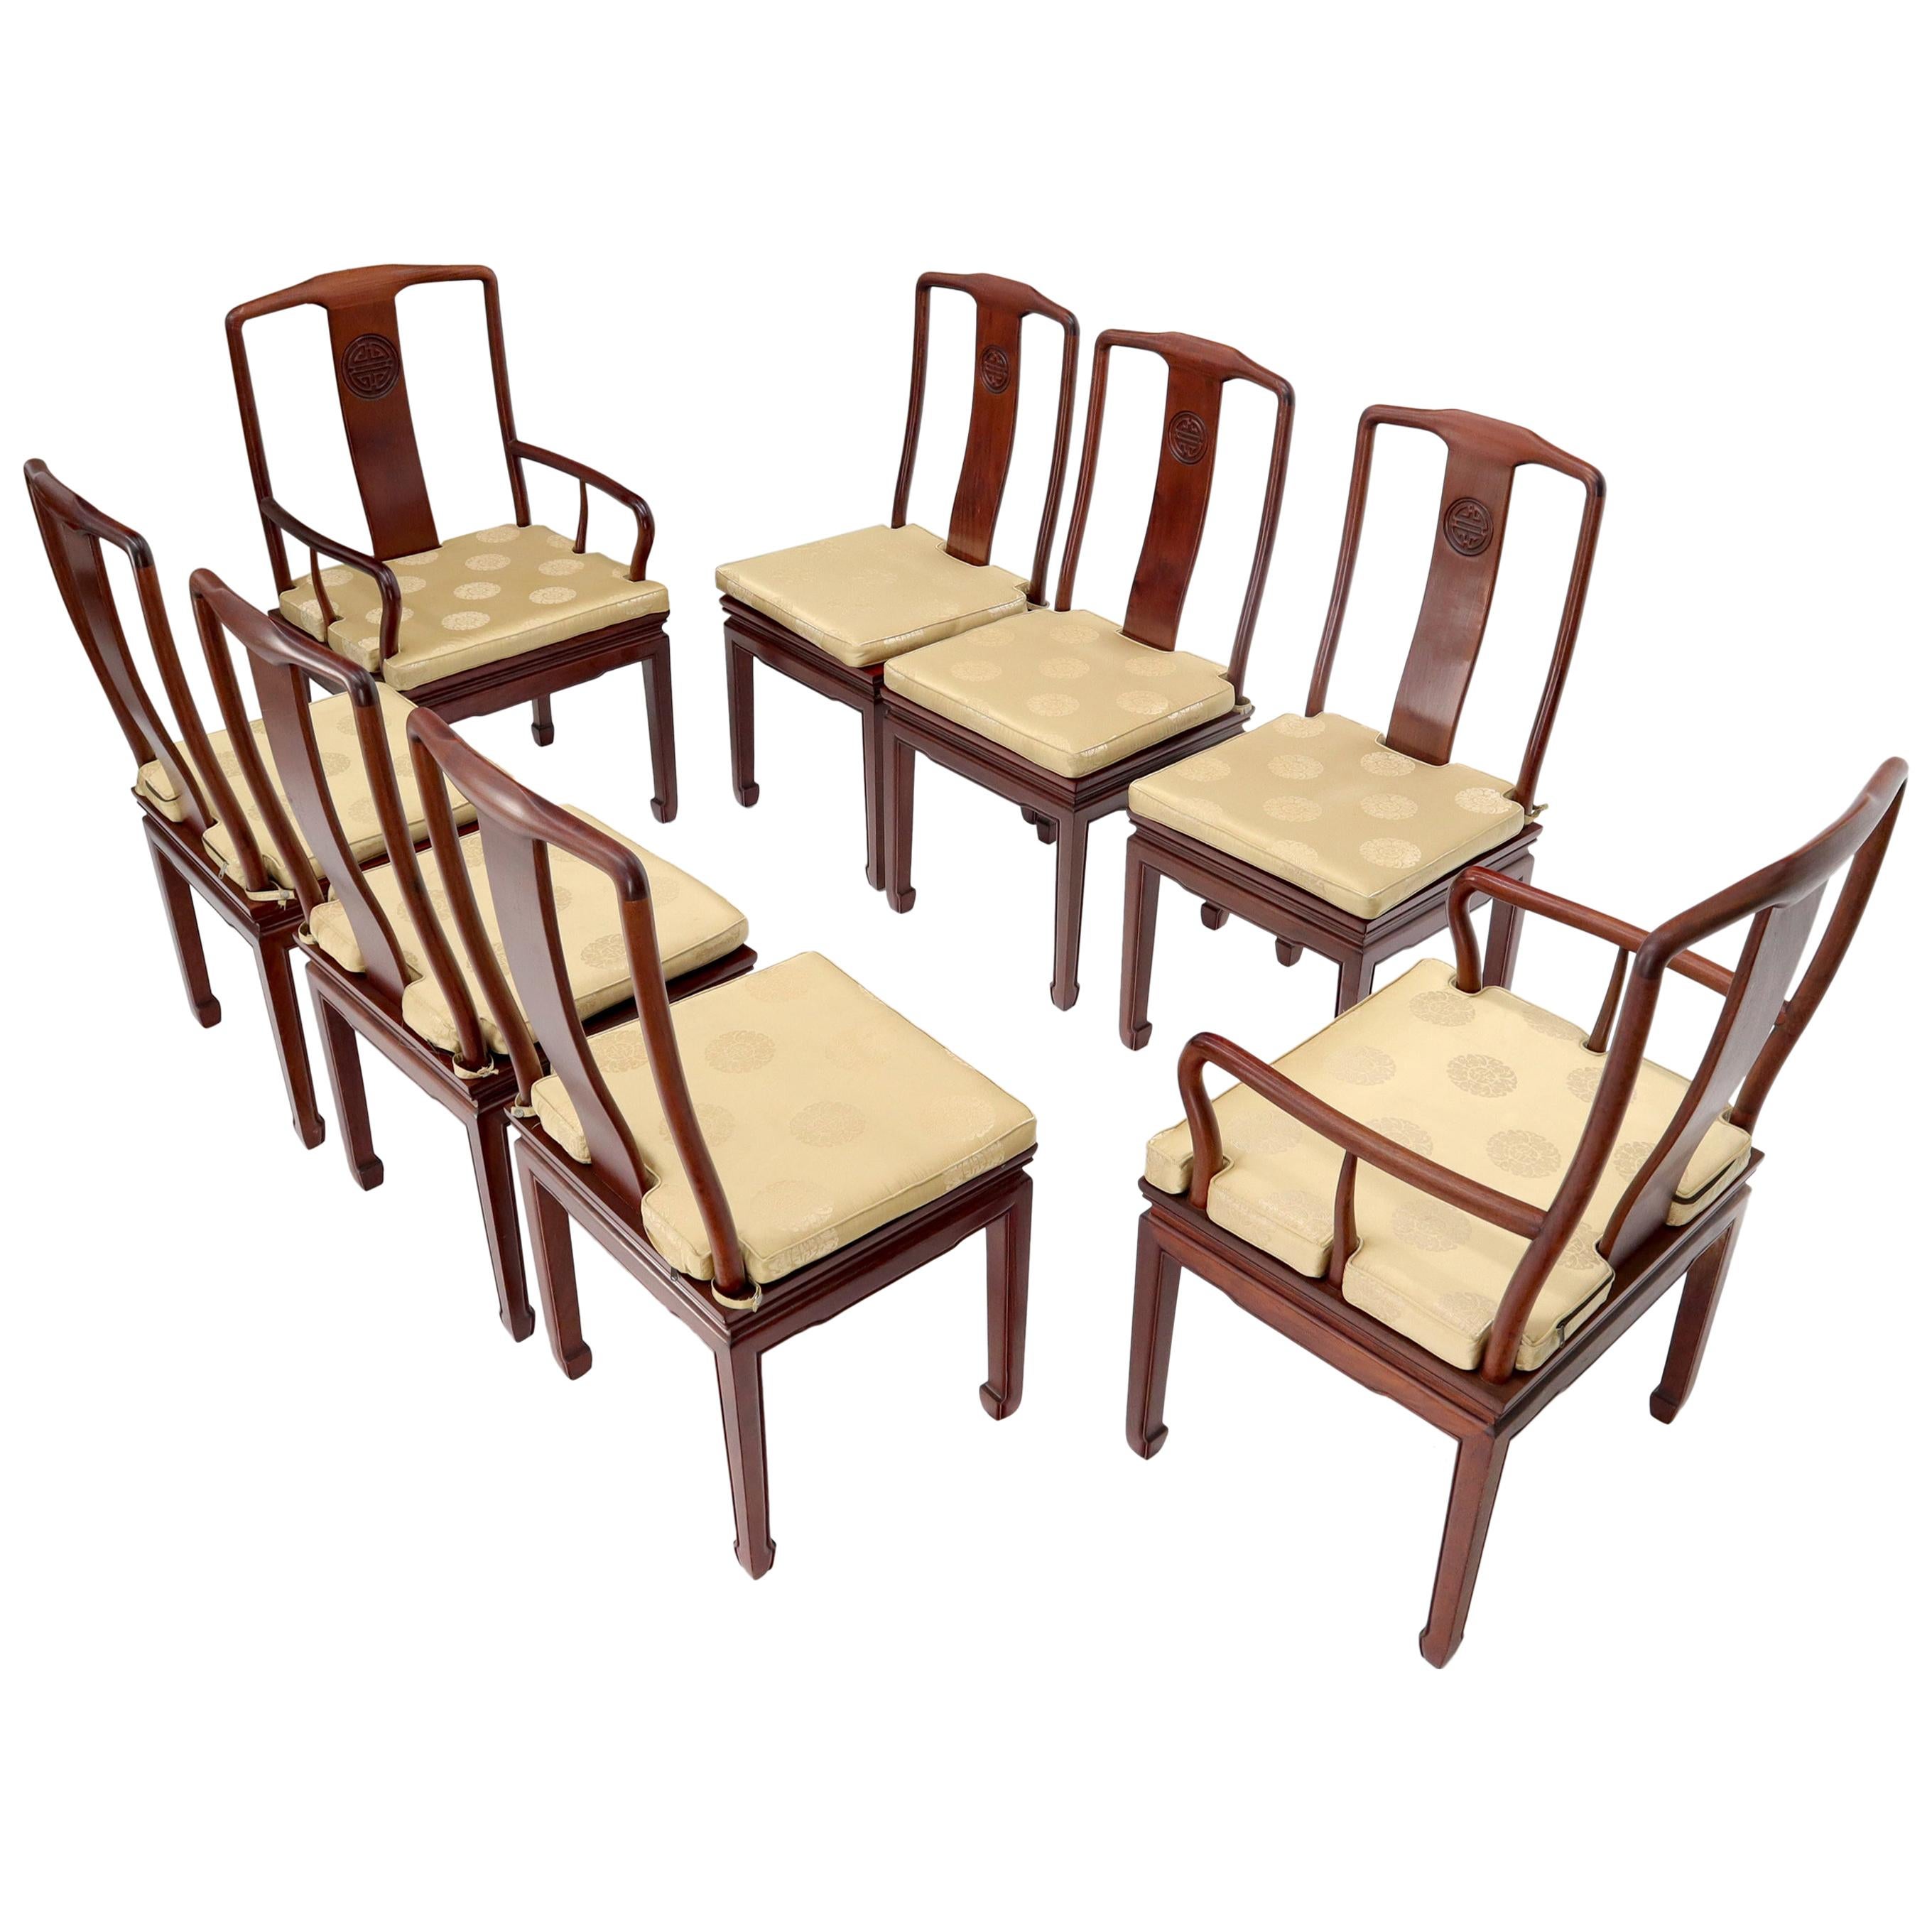 Satz von 8 massiven Palisanderholz hohe Qualität chinesische asiatische Esszimmer Stühle